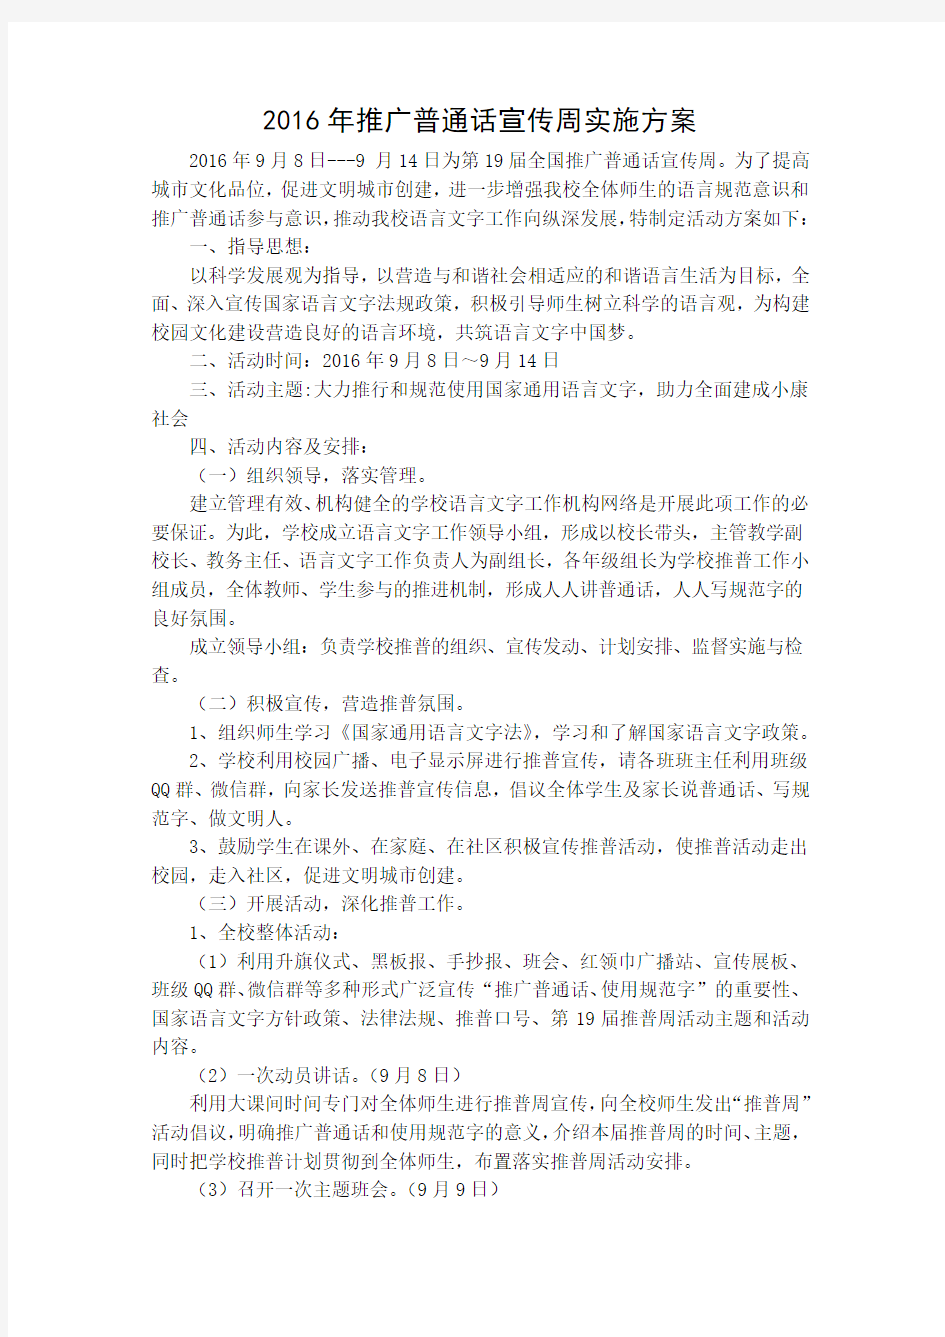 2016年推广普通话宣传周实施方案